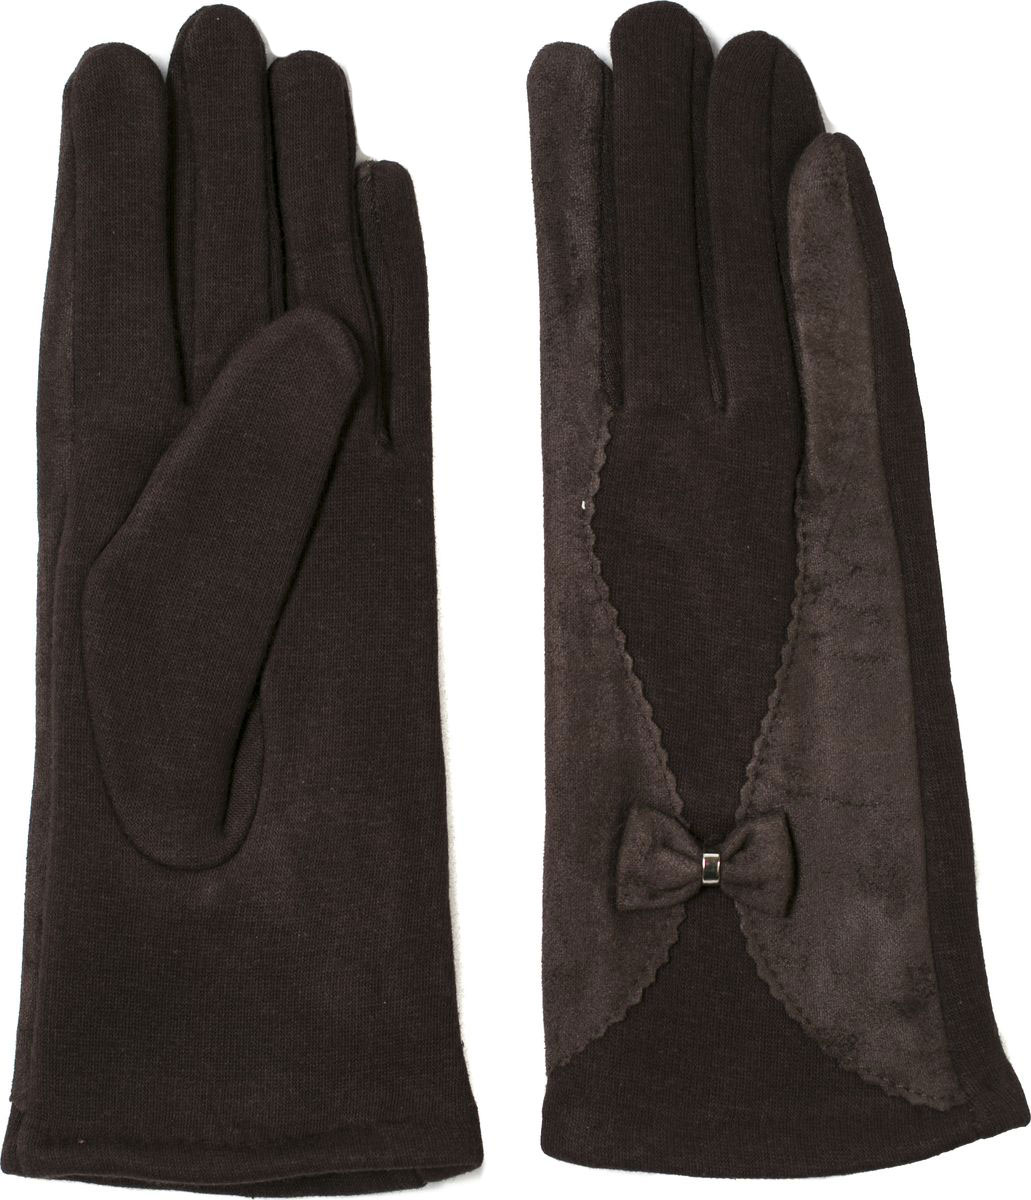 Перчатки женские Mitya Veselkov, цвет: коричневый. PERCH10-BANT-BROWN. Размер универсальный